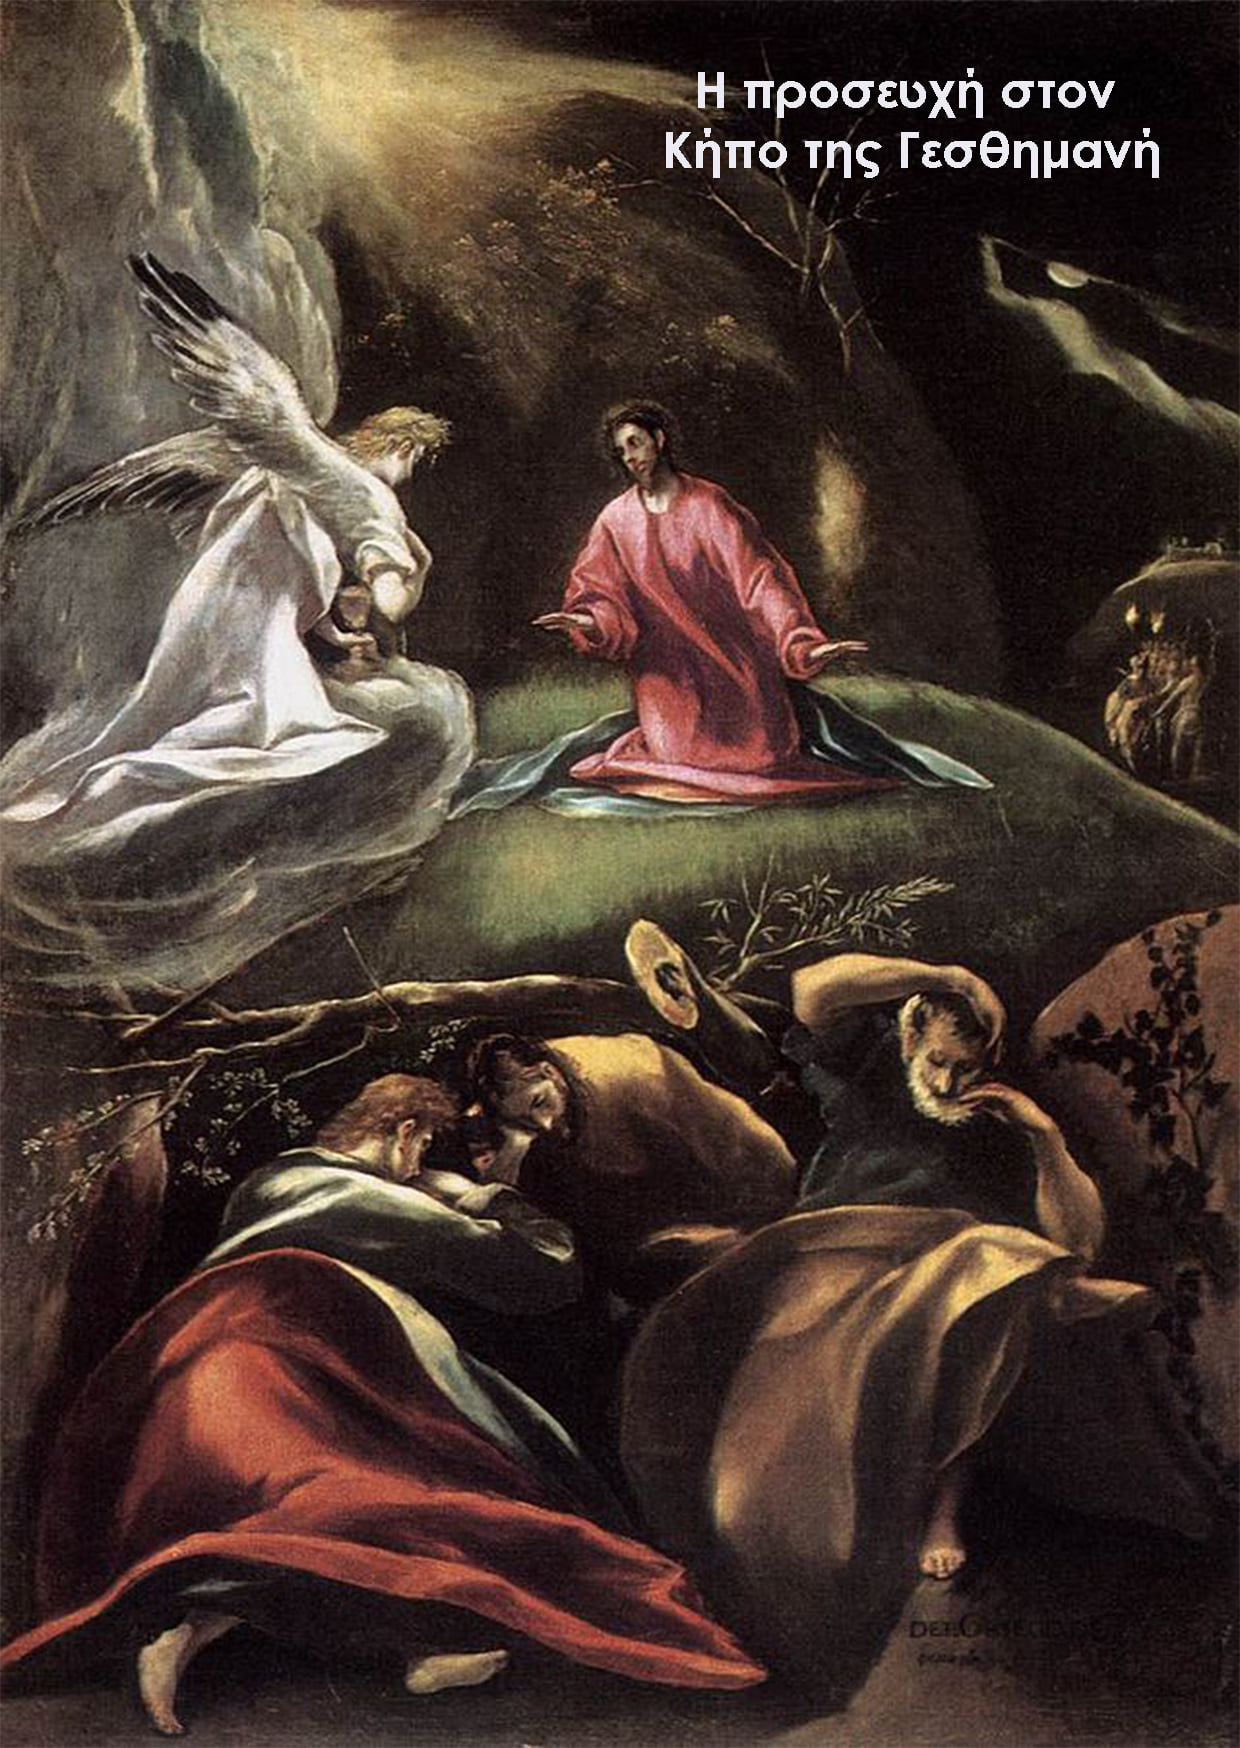 Αριστουργηματικοί πίνακες ζωγραφικής του Δομίνικου Θεοτοκόπουλου ή αλλιώς El Gre... 4